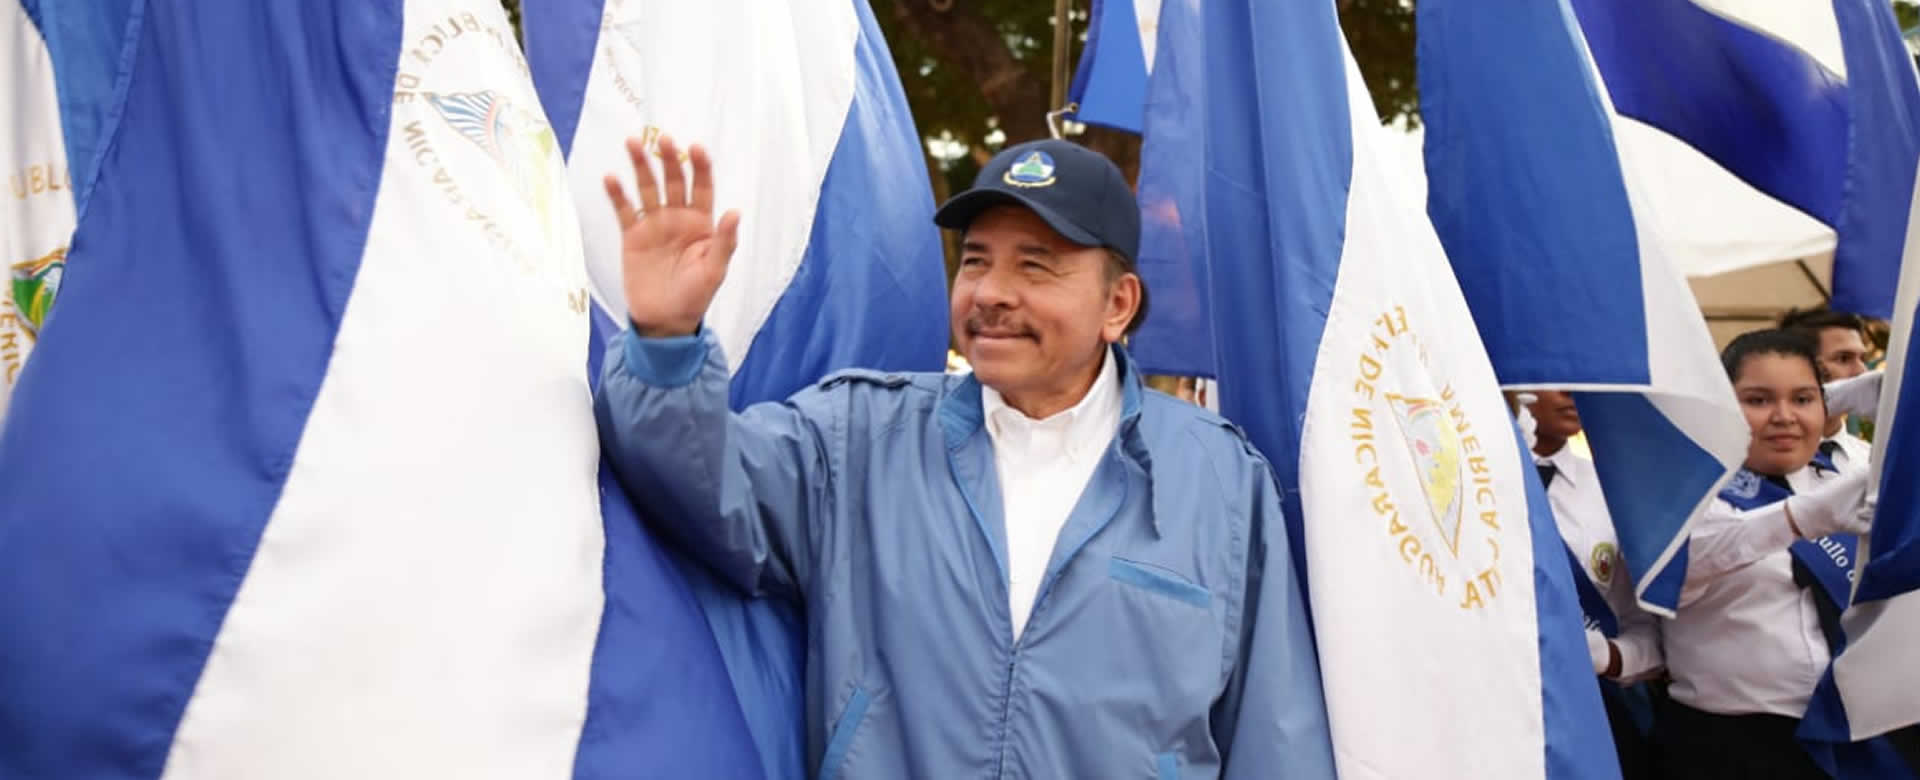 Frente sandinista continúa siendo la principal fuerza política de Nicaragua